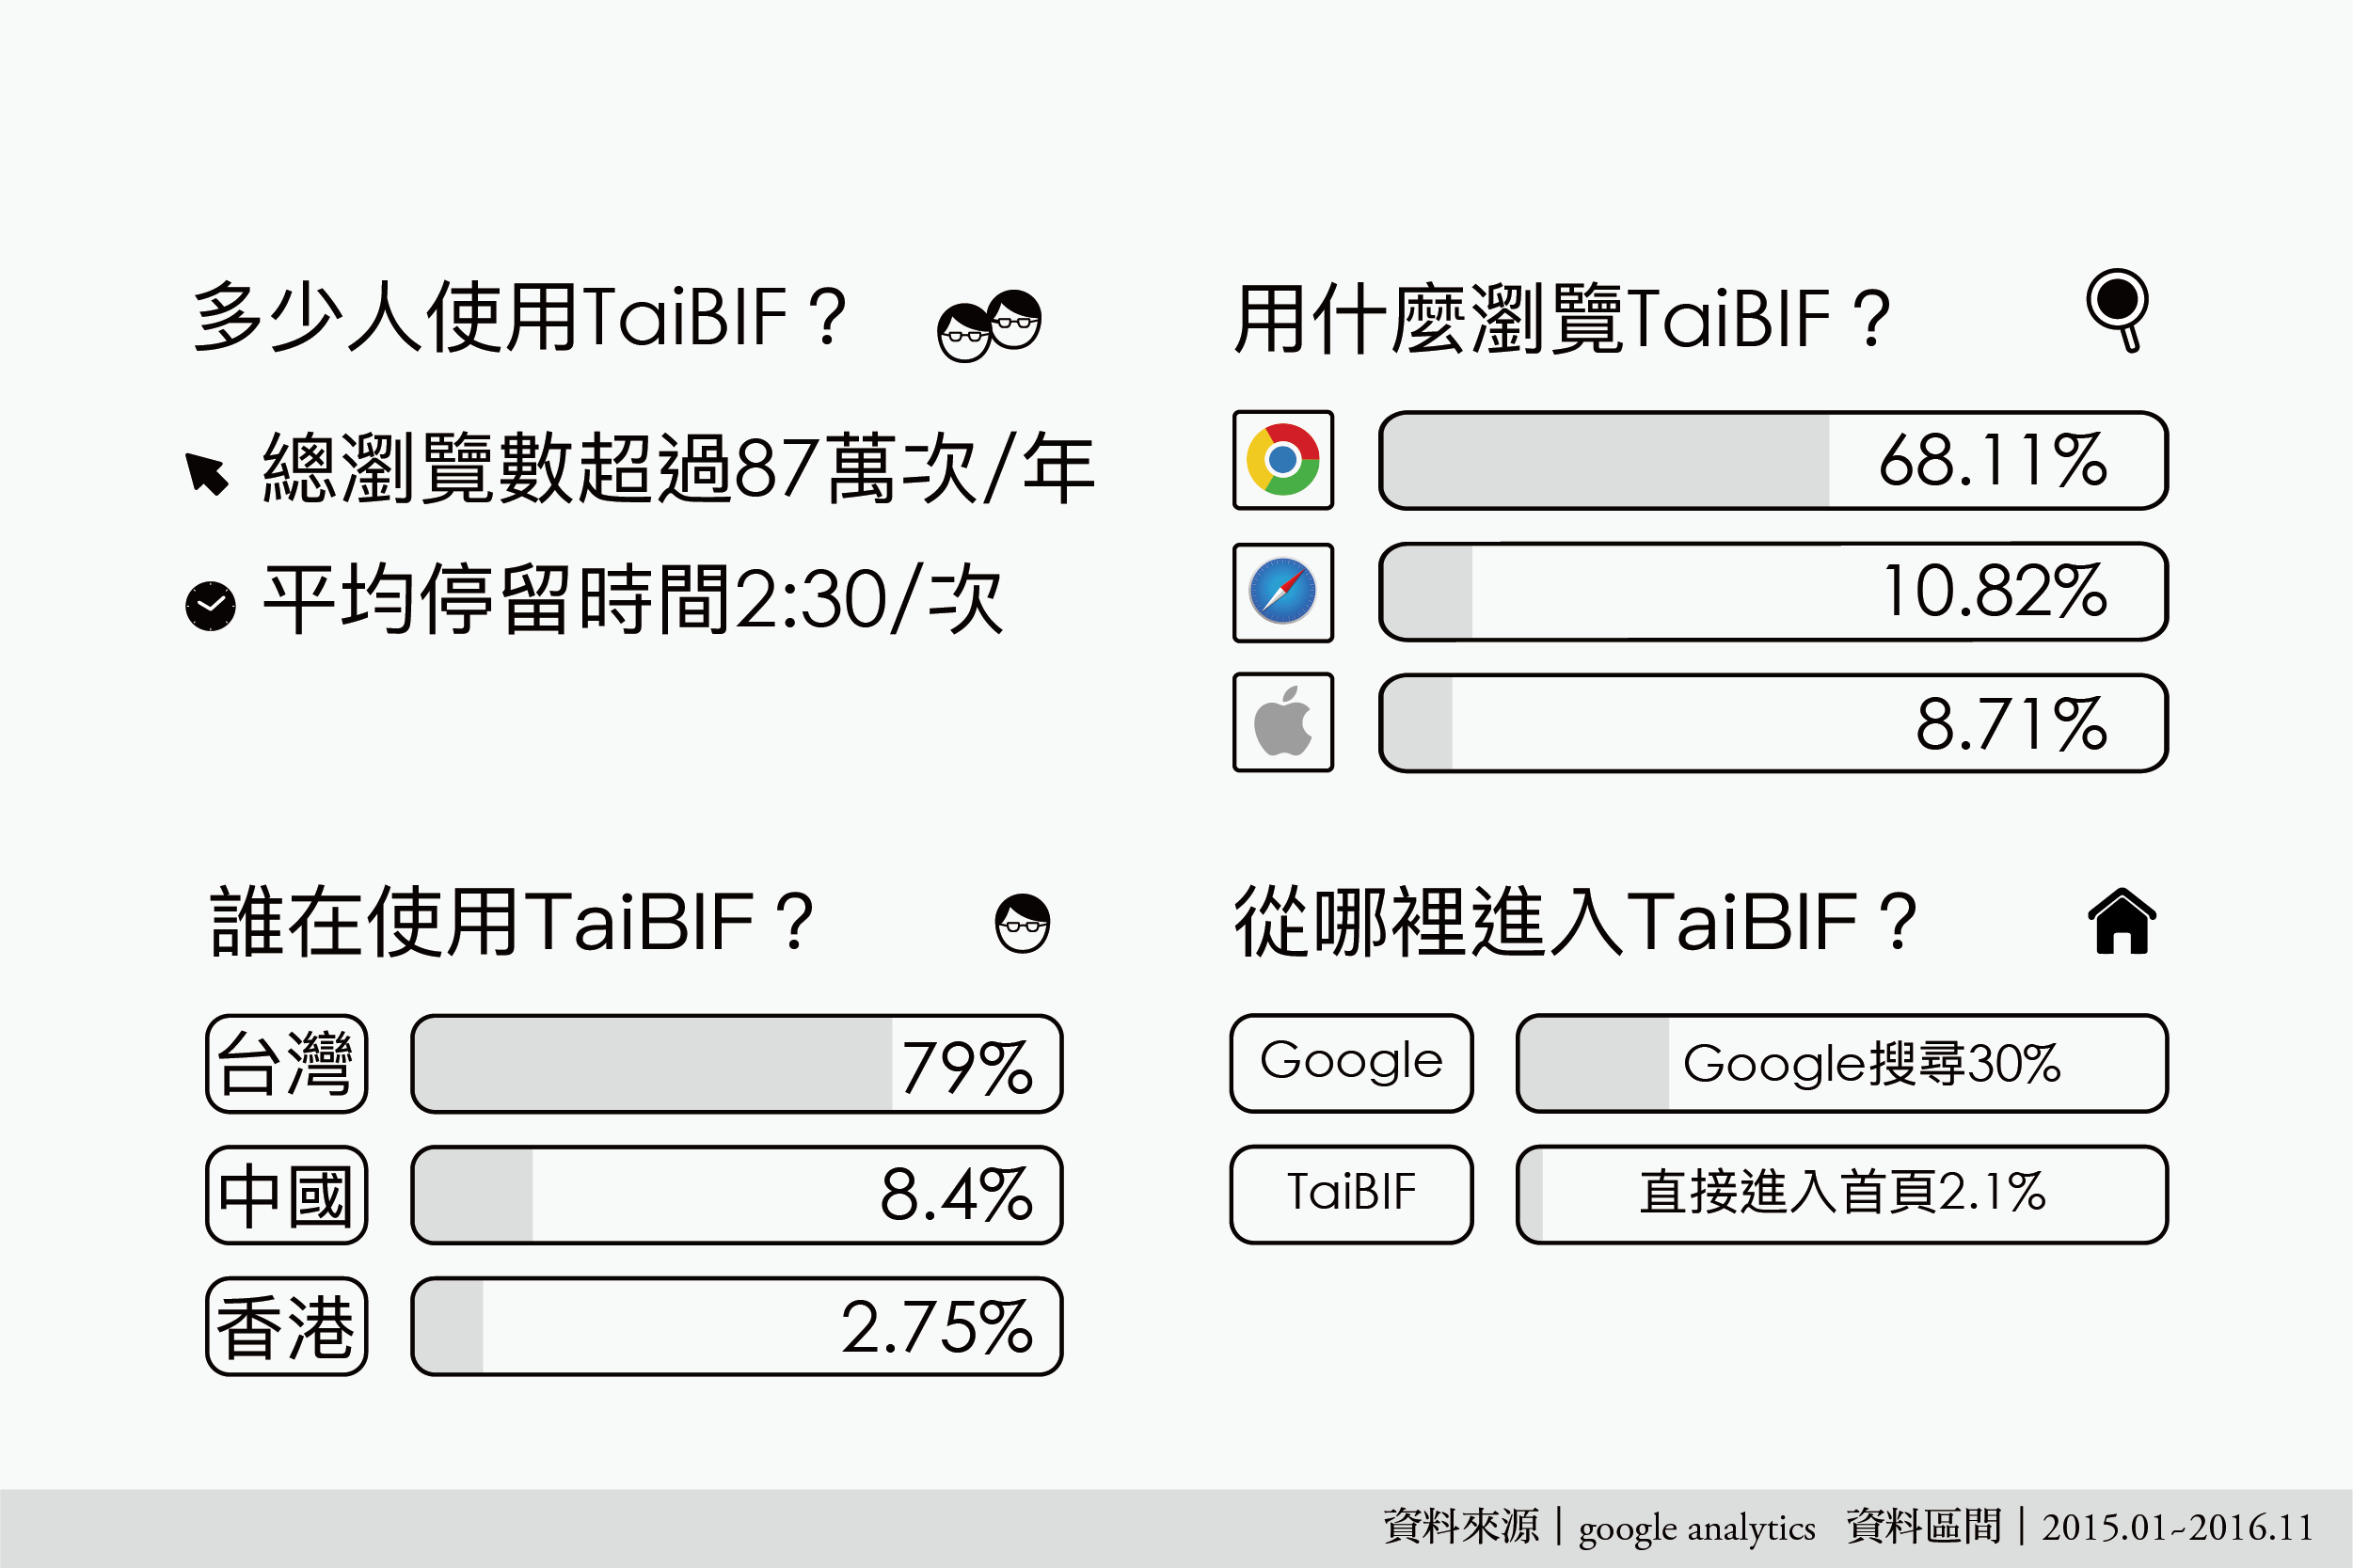 台灣生物多樣性資料庫使用概況：以 TaiBIF 為例。 資料來源｜系統分類及生物多樣性資訊專題中心   圖說美化｜張語辰